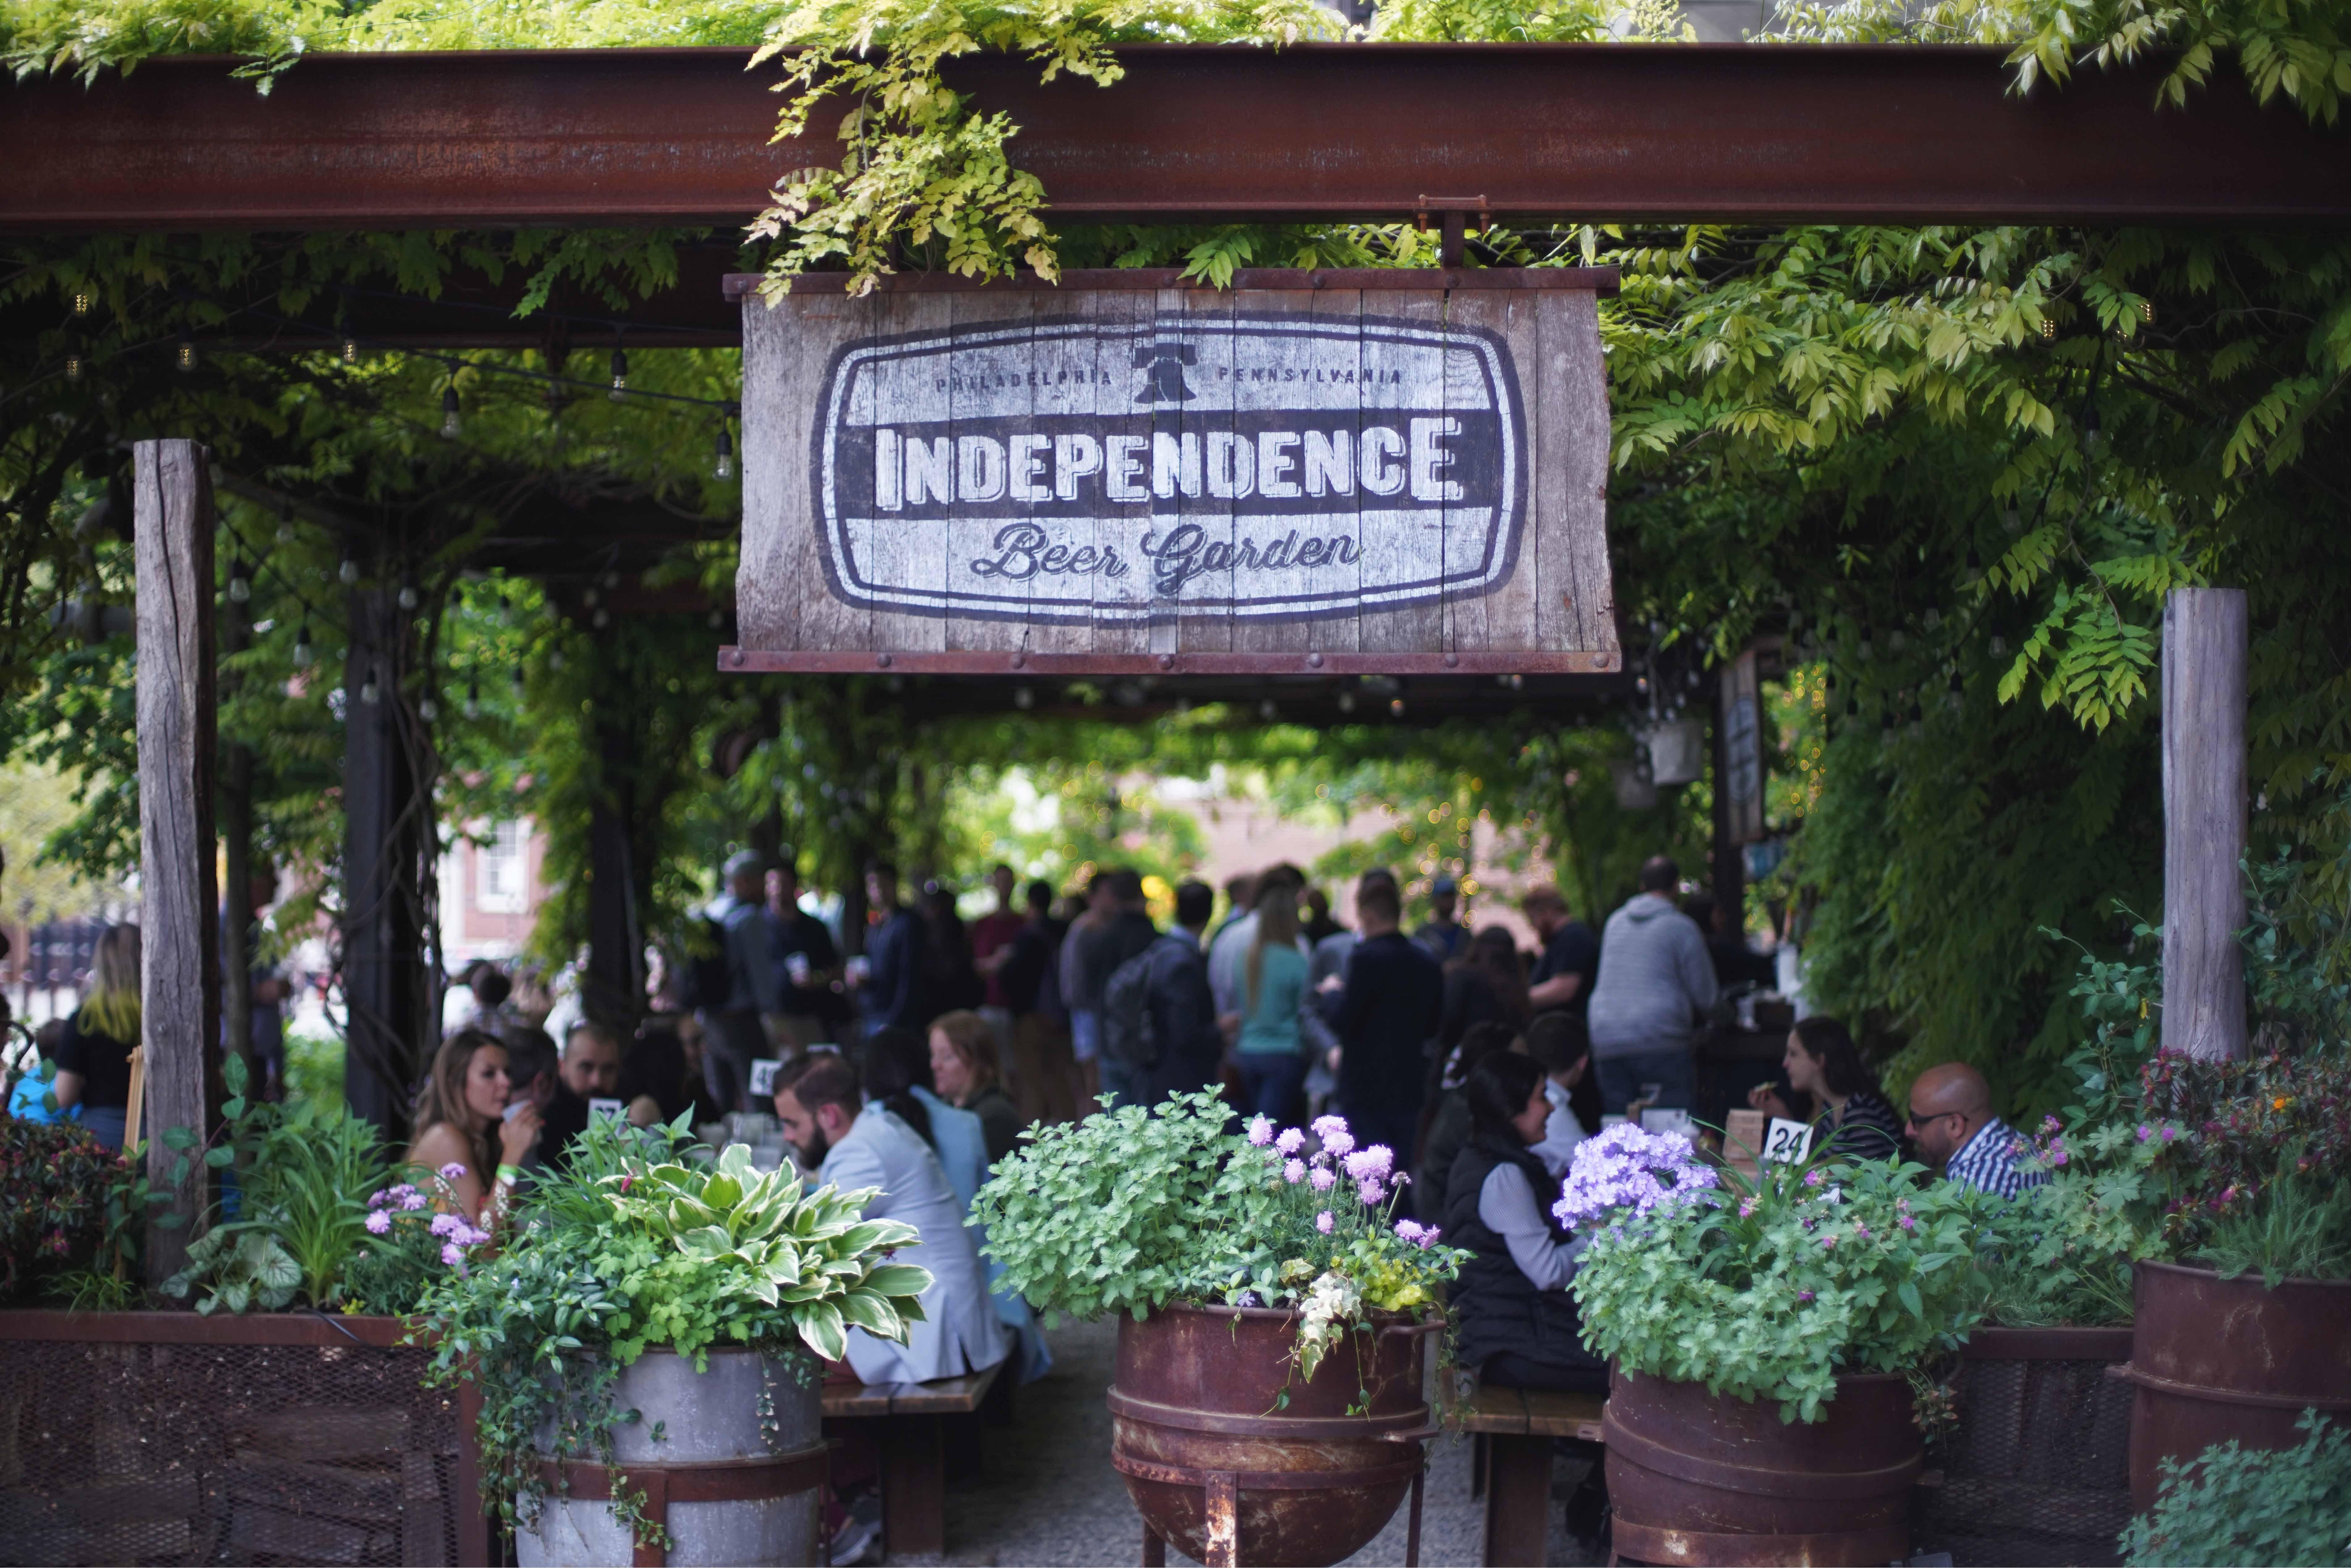 Independence Beer Garden Photo